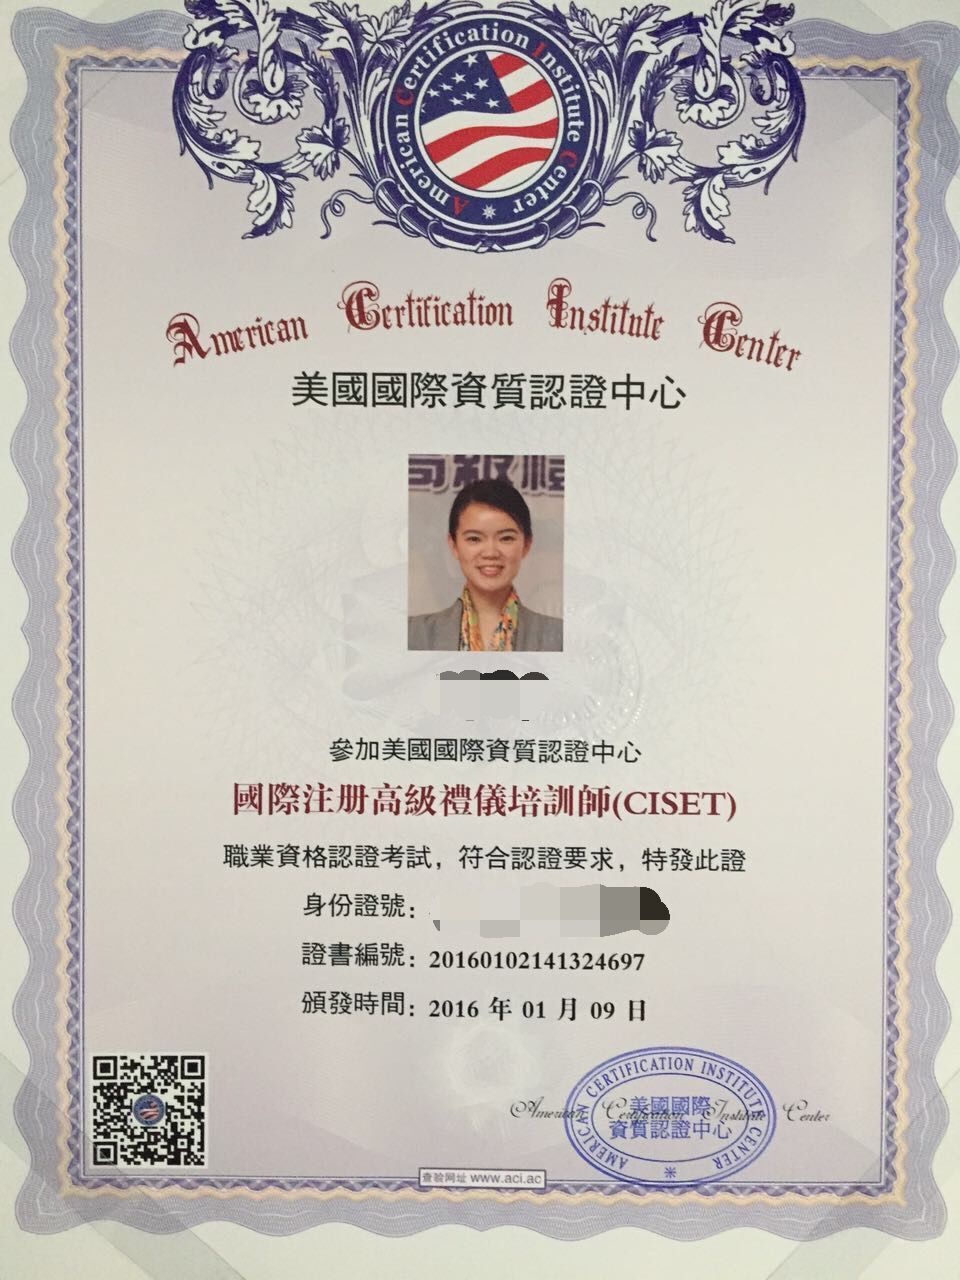 ACIC国际注册礼仪培训师认证班